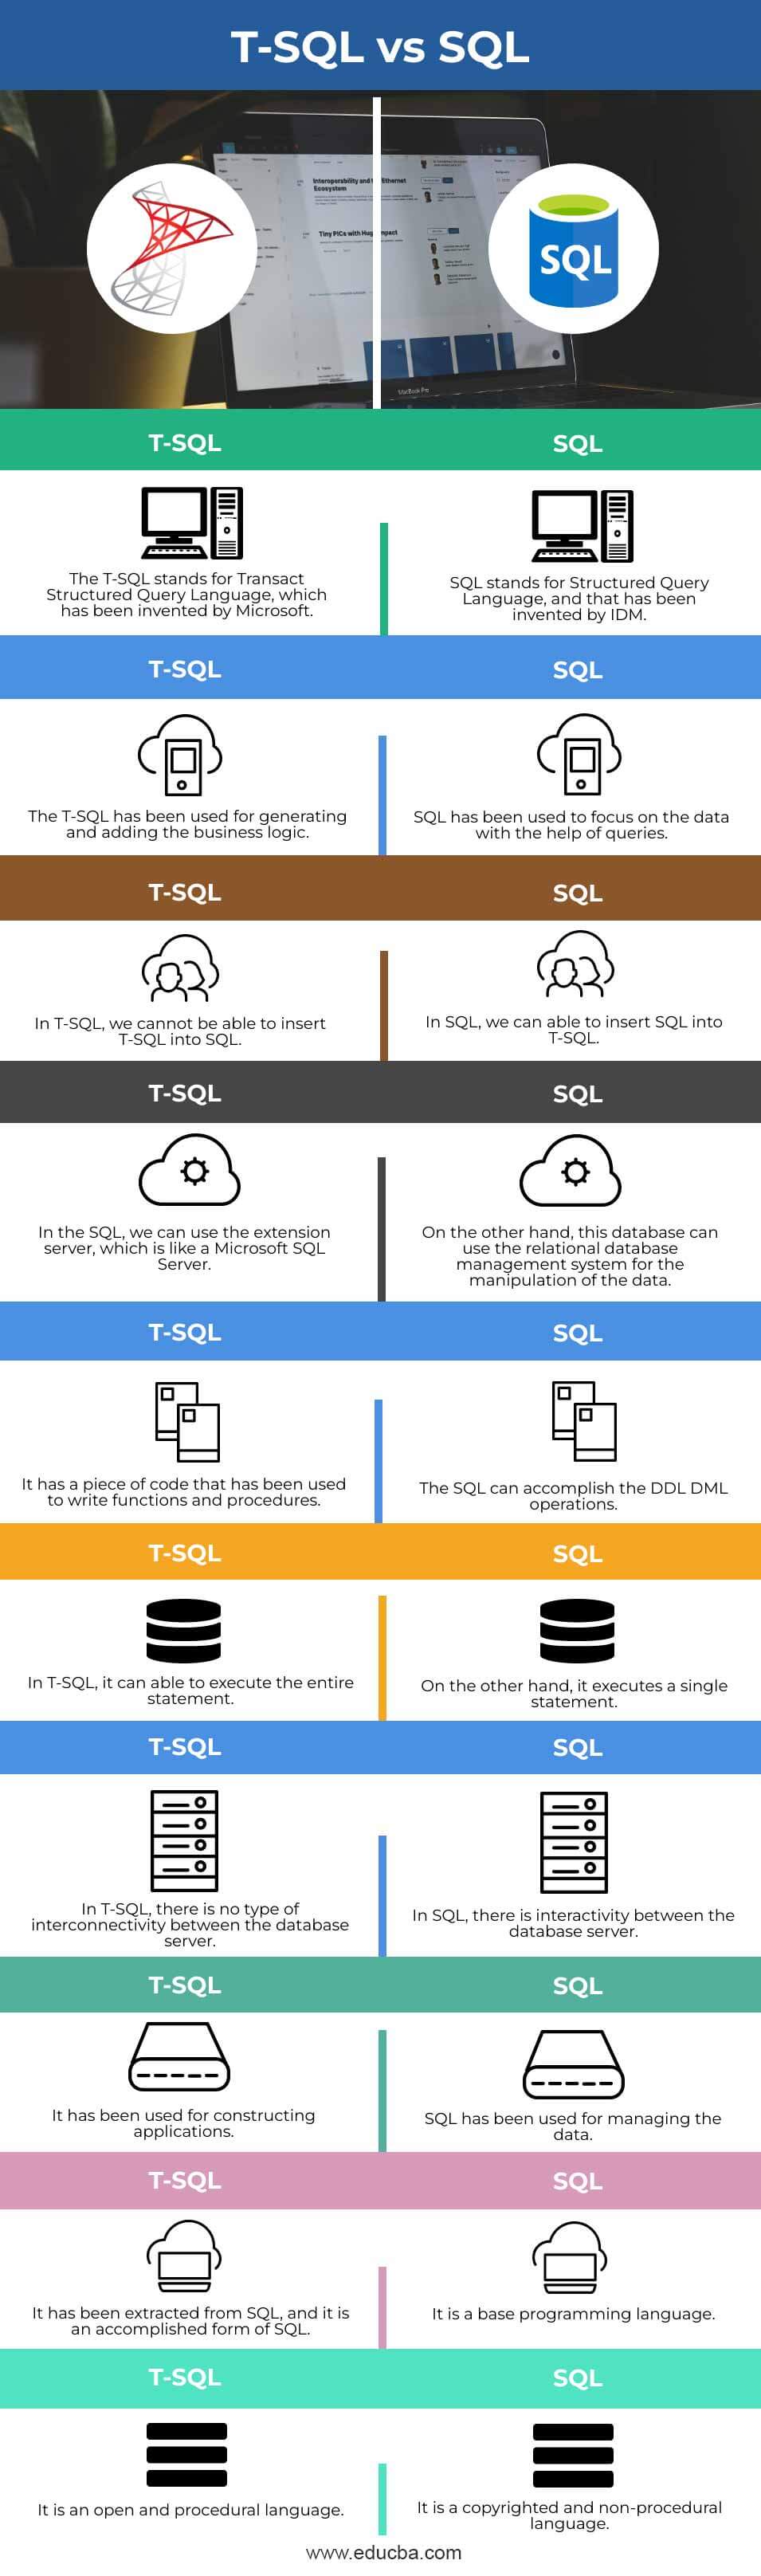 T-SQL-vs-SQL-info